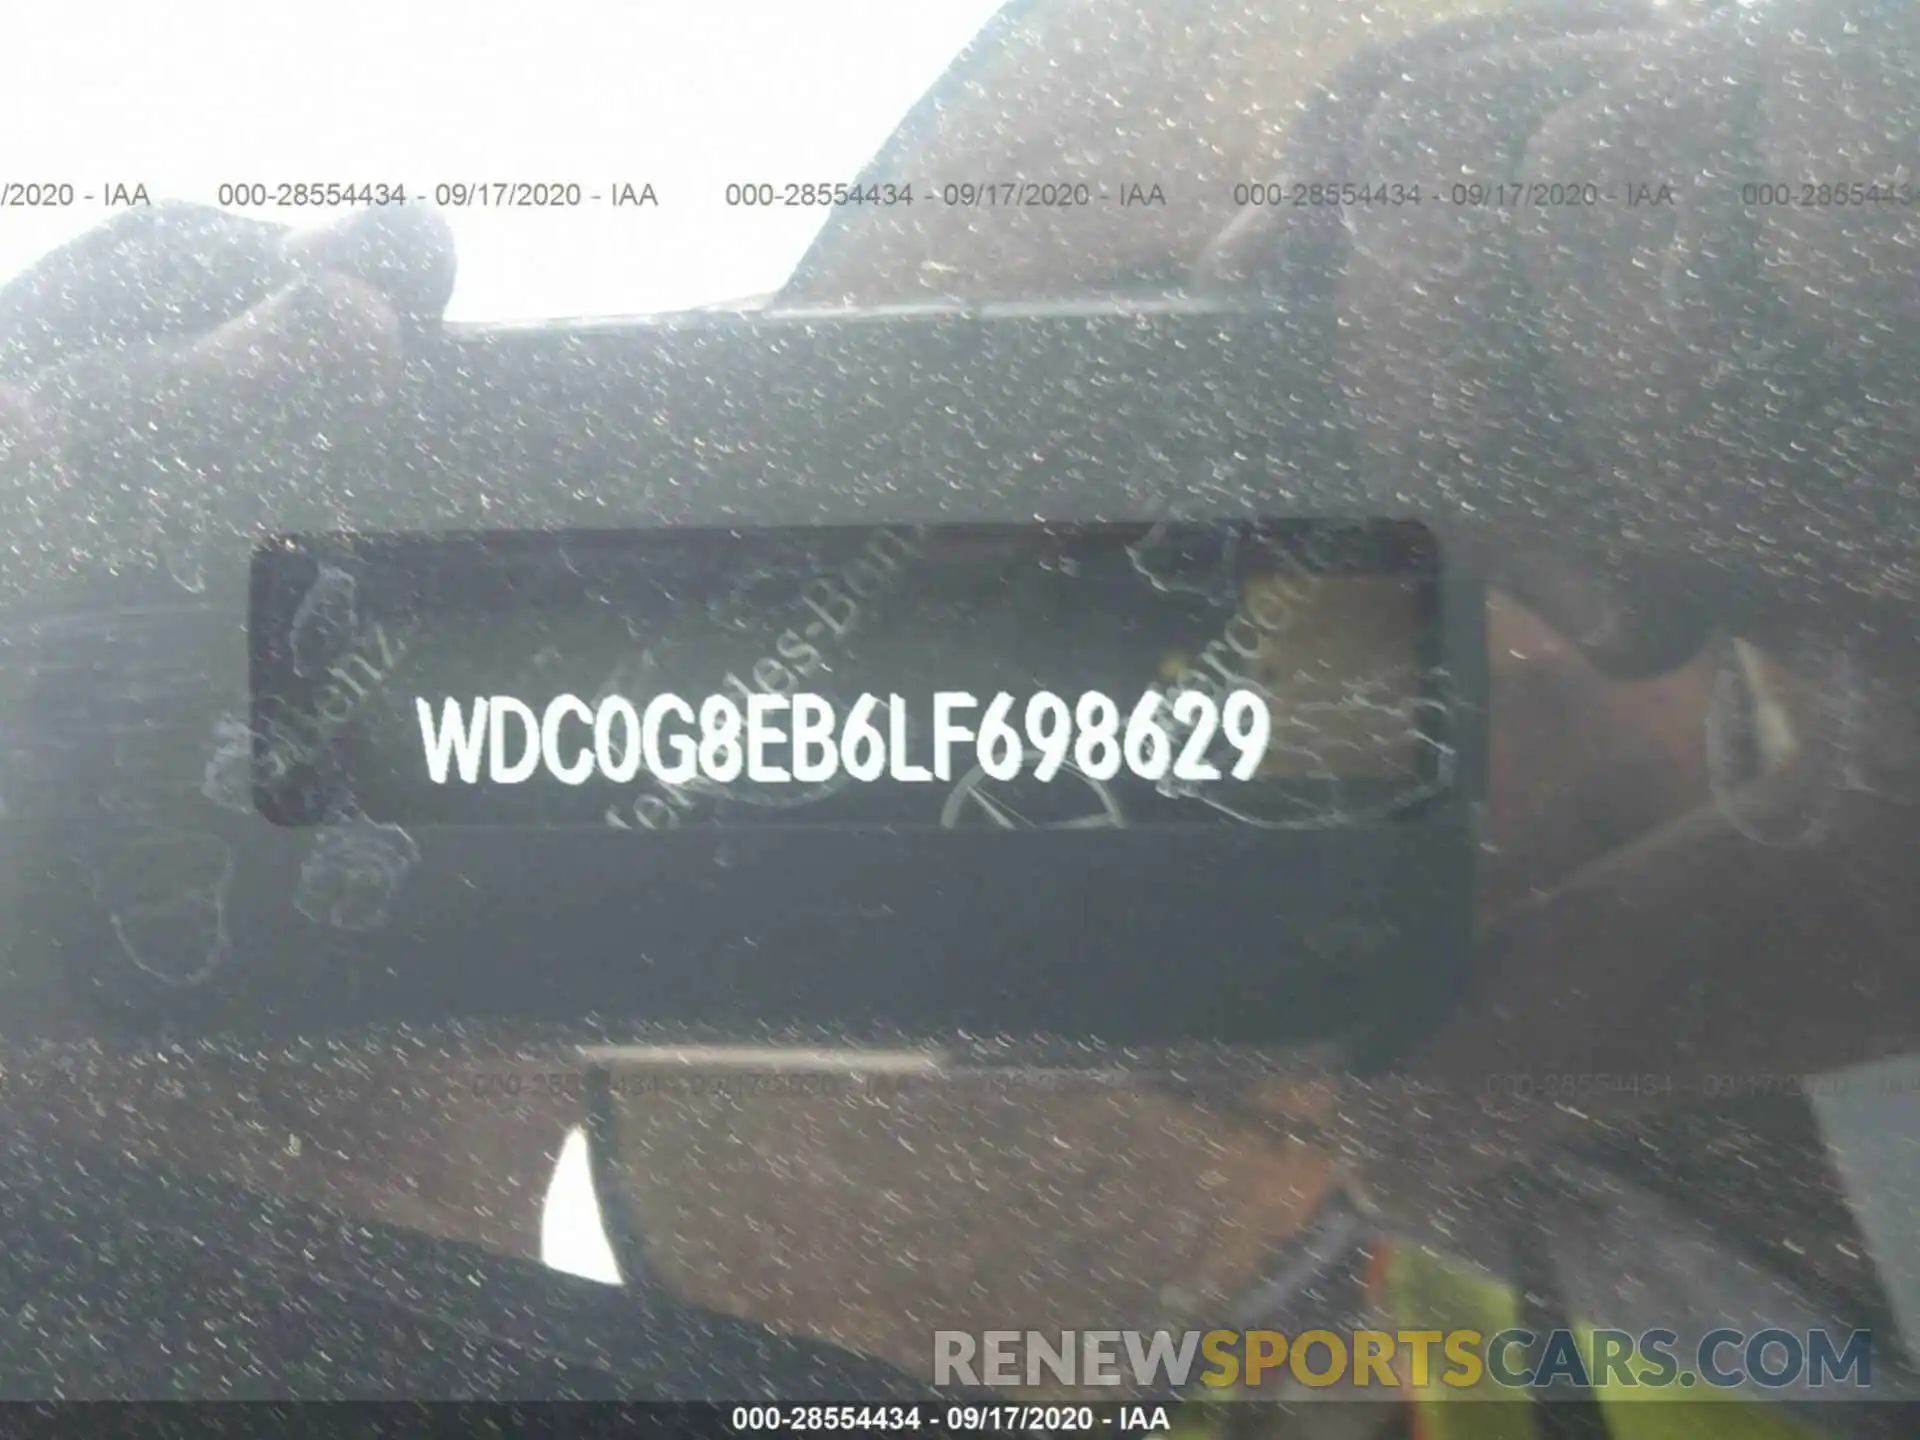 9 Photograph of a damaged car WDC0G8EB6LF698629 MERCEDES-BENZ GLC 2020